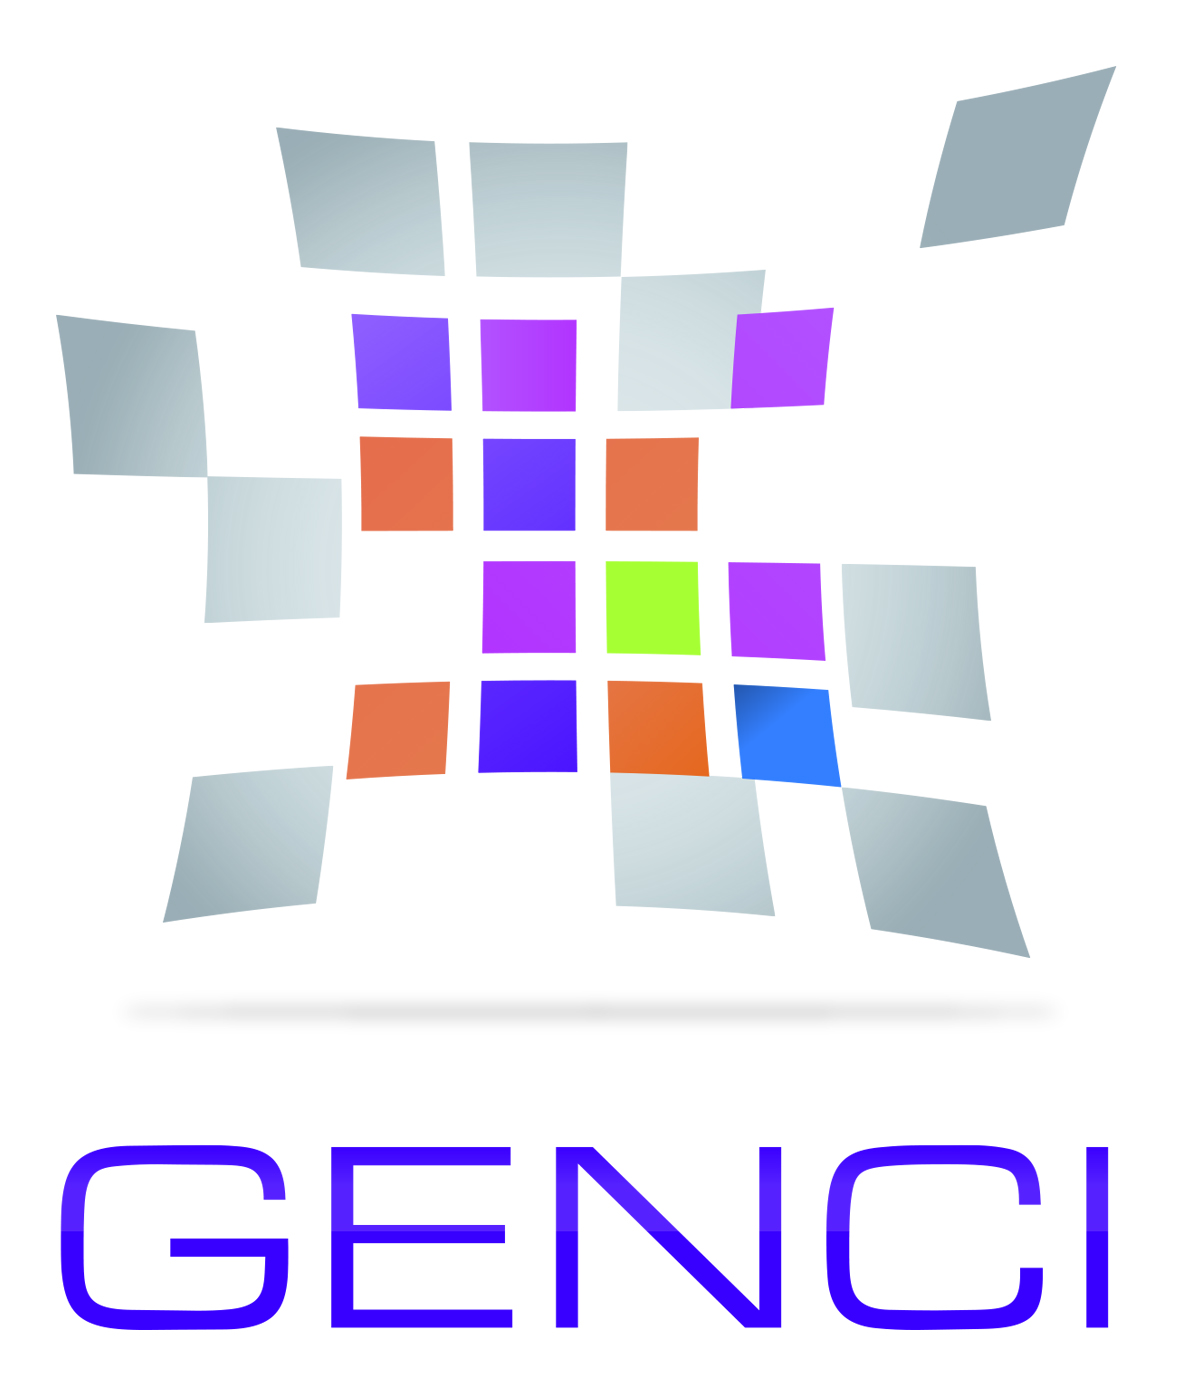 GENCI - Grand équipement national de Calcul intensif